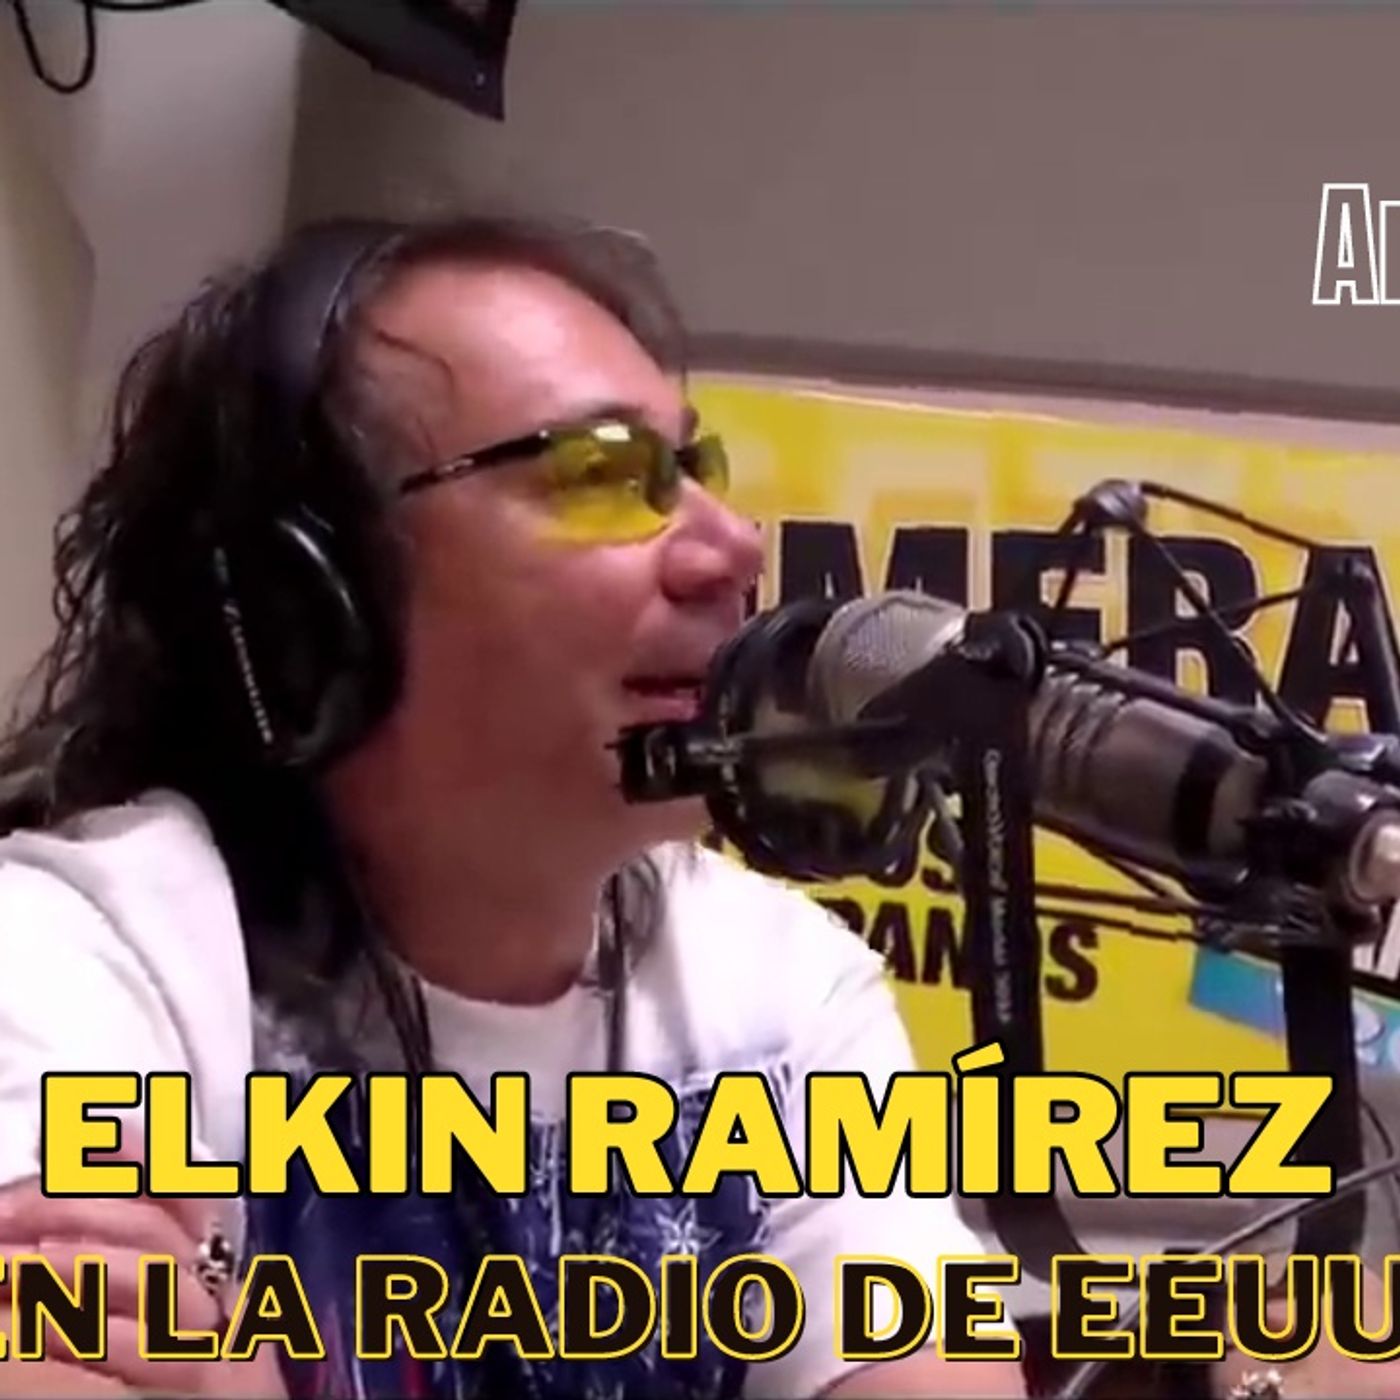 Elkin Ramírez de KRAKEN: "Tenemos derecho a realizar nuestro sueño" - Interpetación acústica de "Vestido de Cristal"